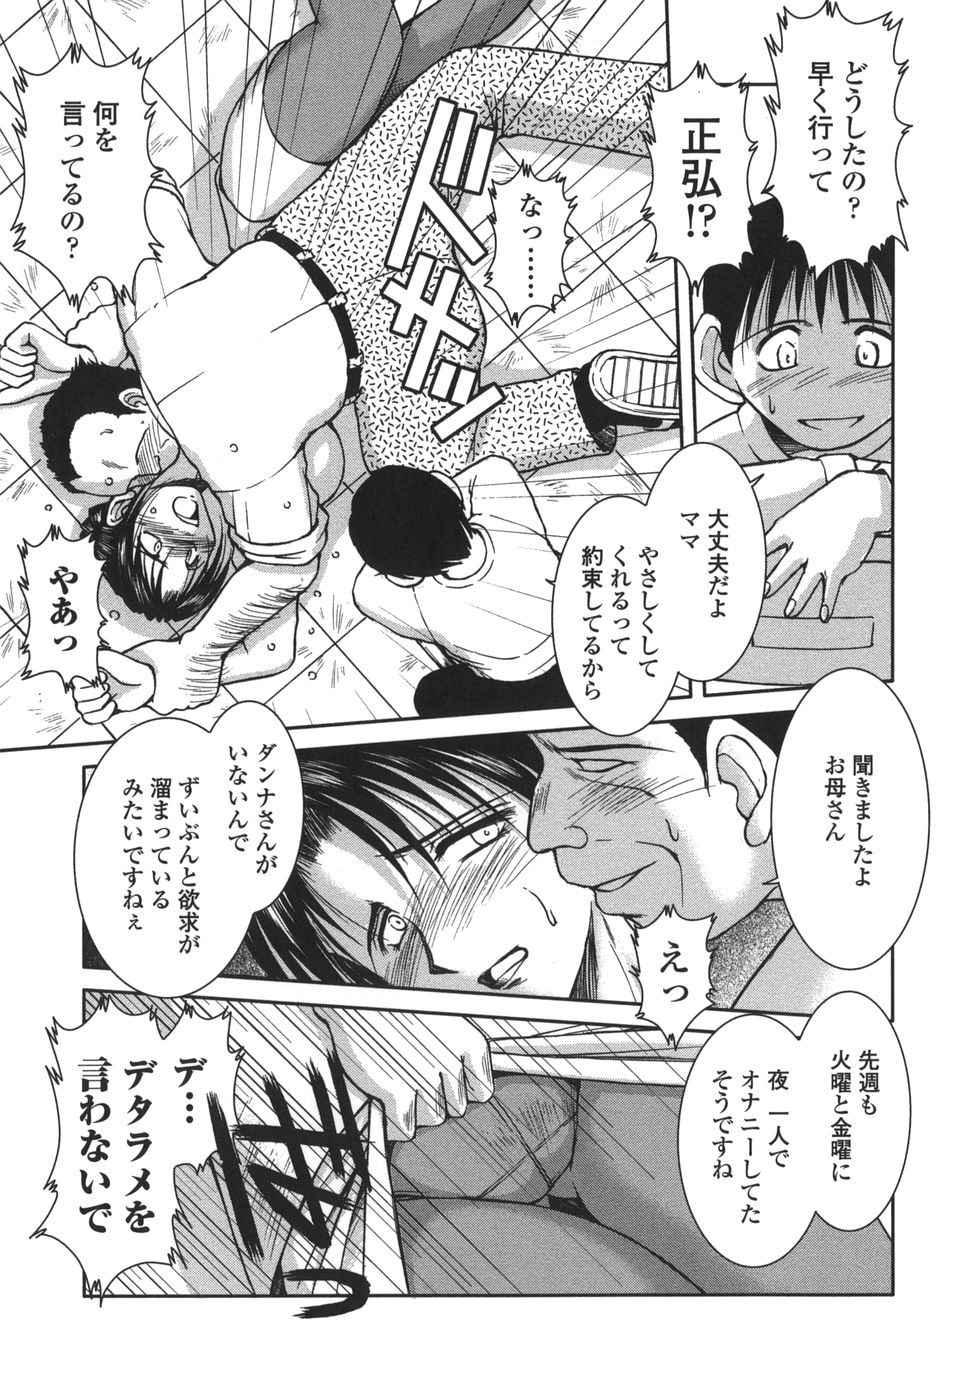 [Shuusaku Chiba] Sunaba no Aruji page 11 full